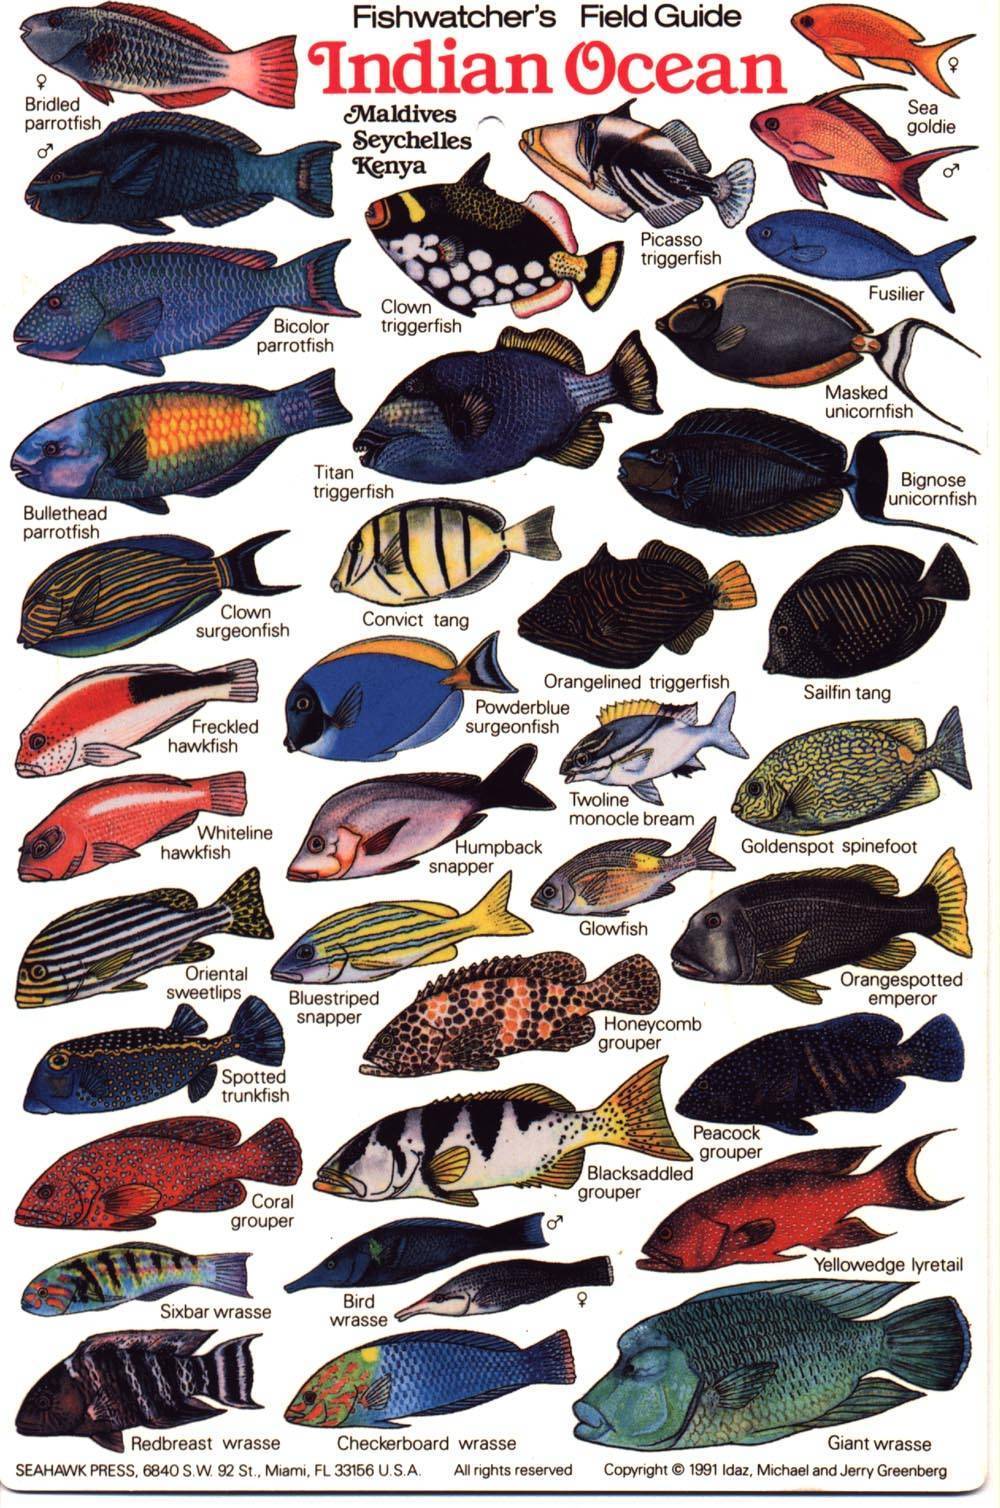 Рыбы красного моря каталог фото с названиями